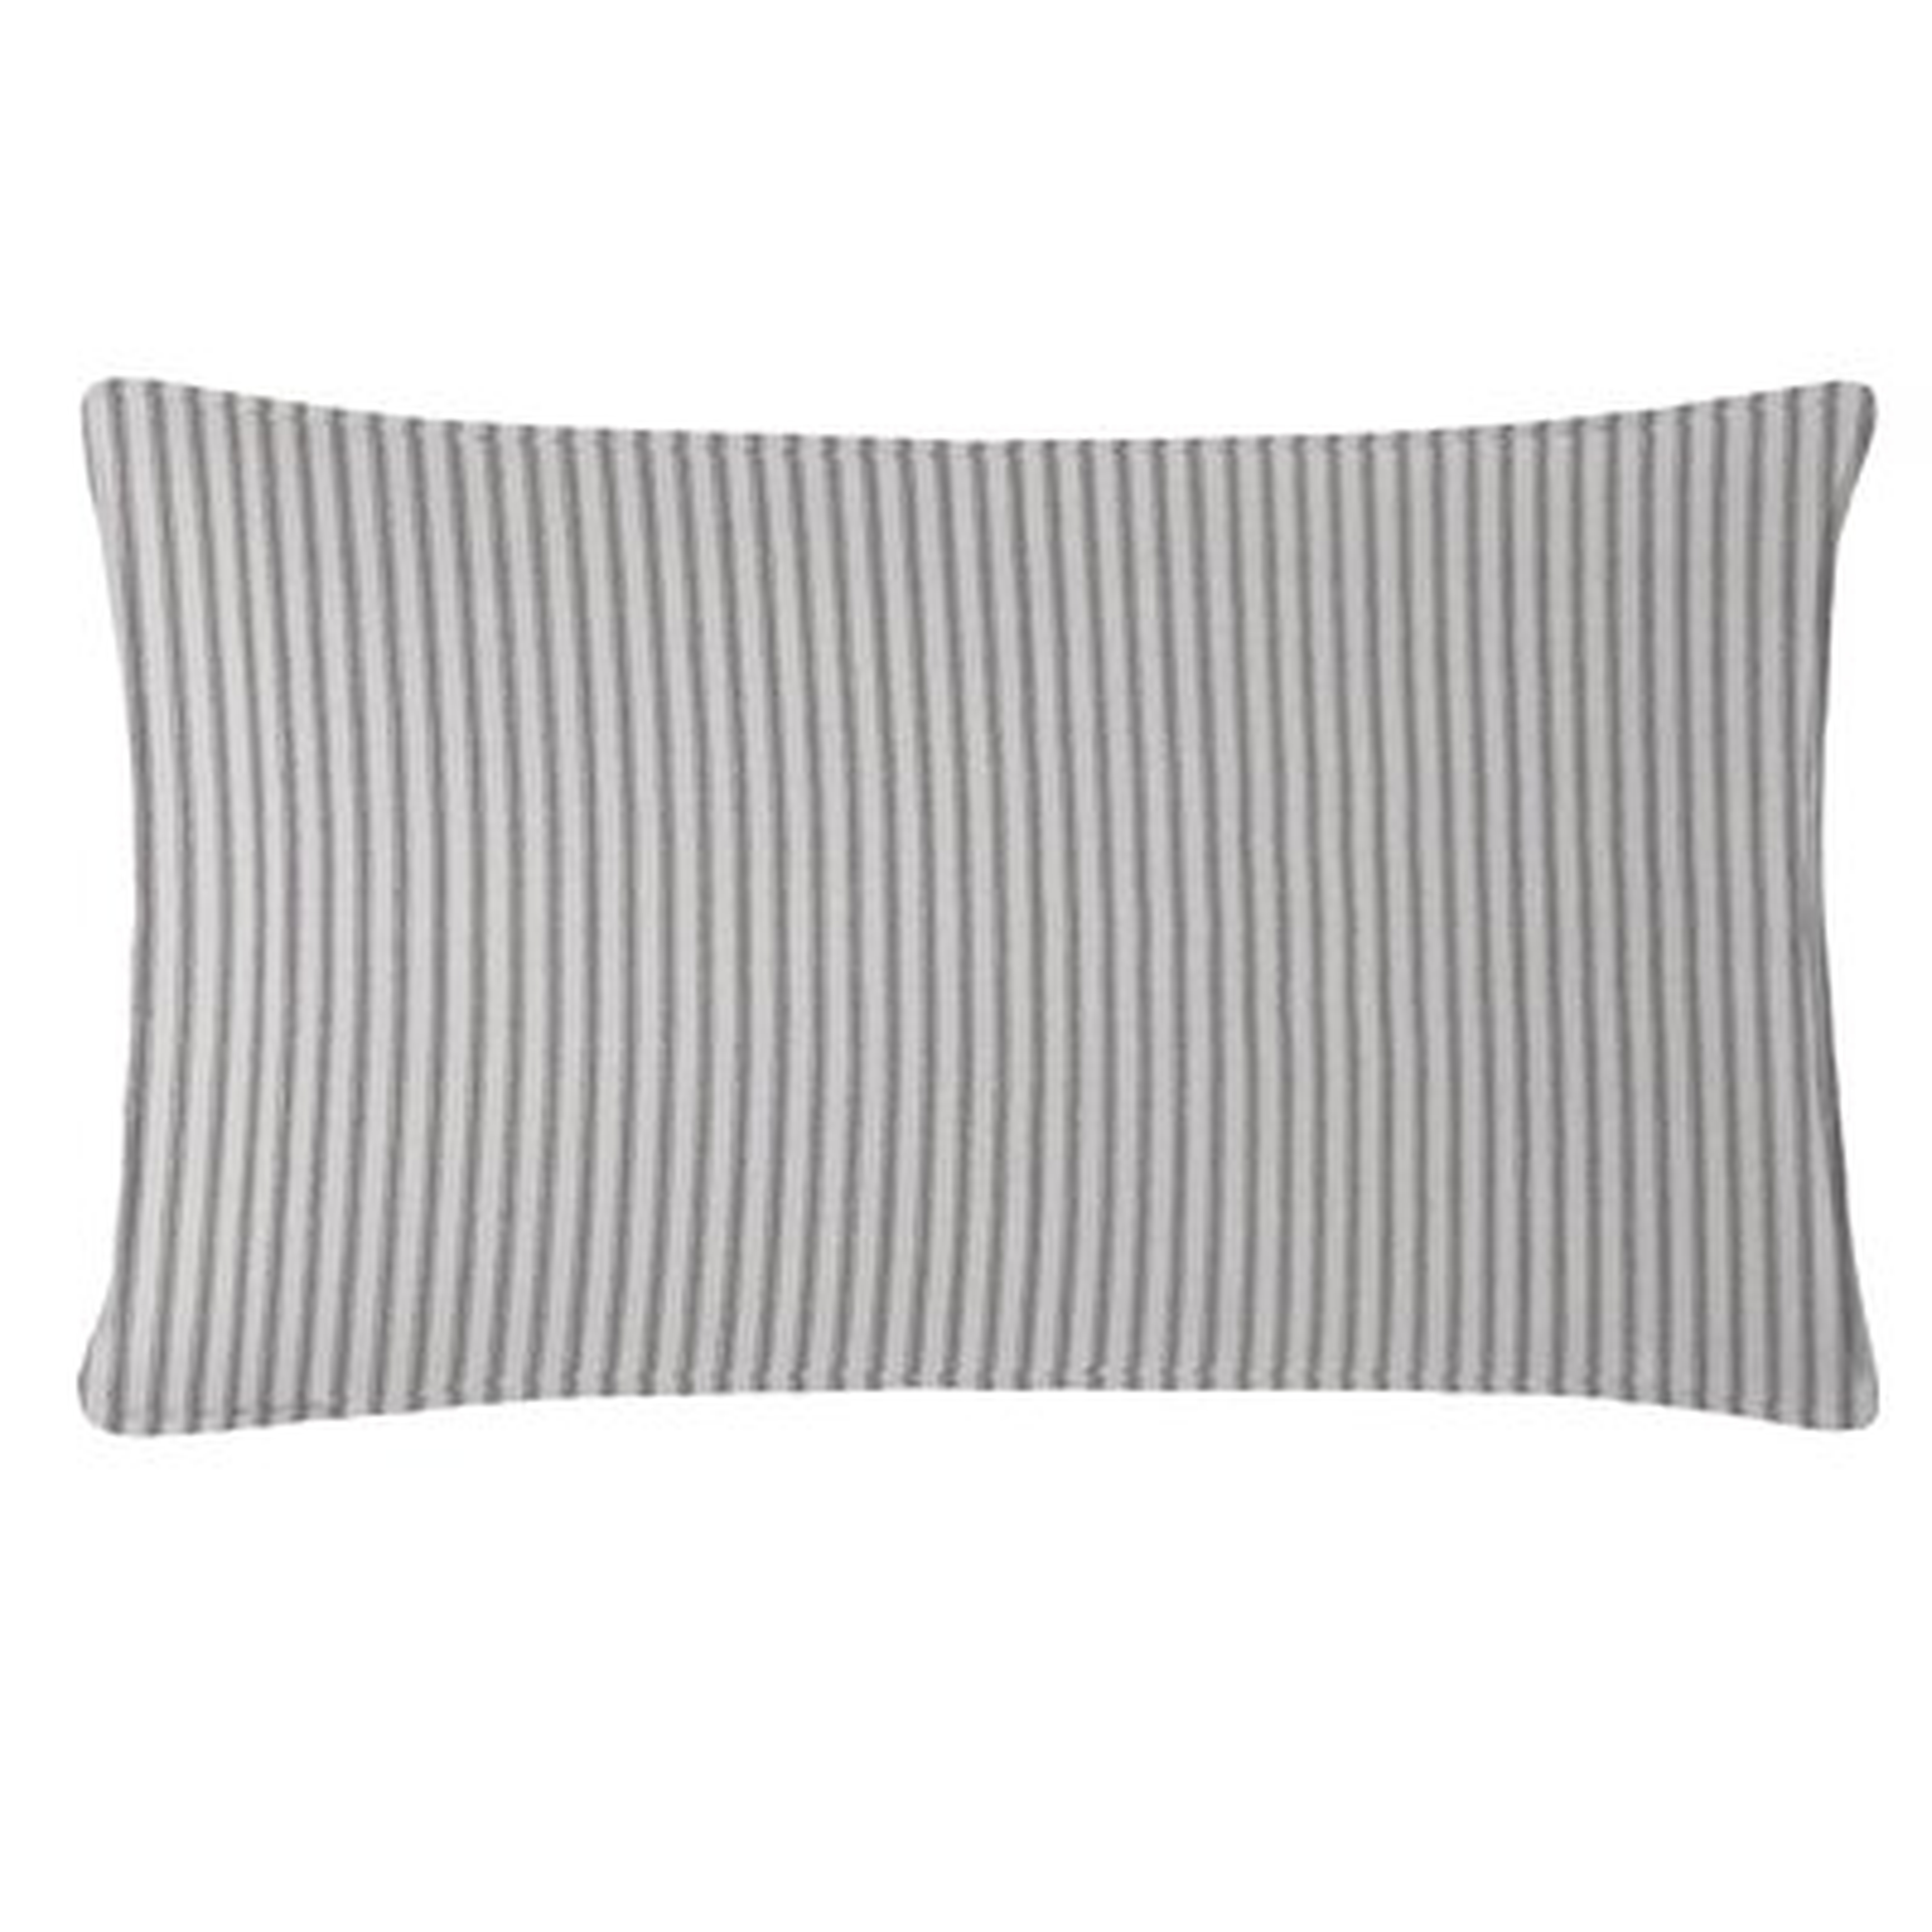 Acampo Cotton Striped Lumbar Pillow - Wayfair